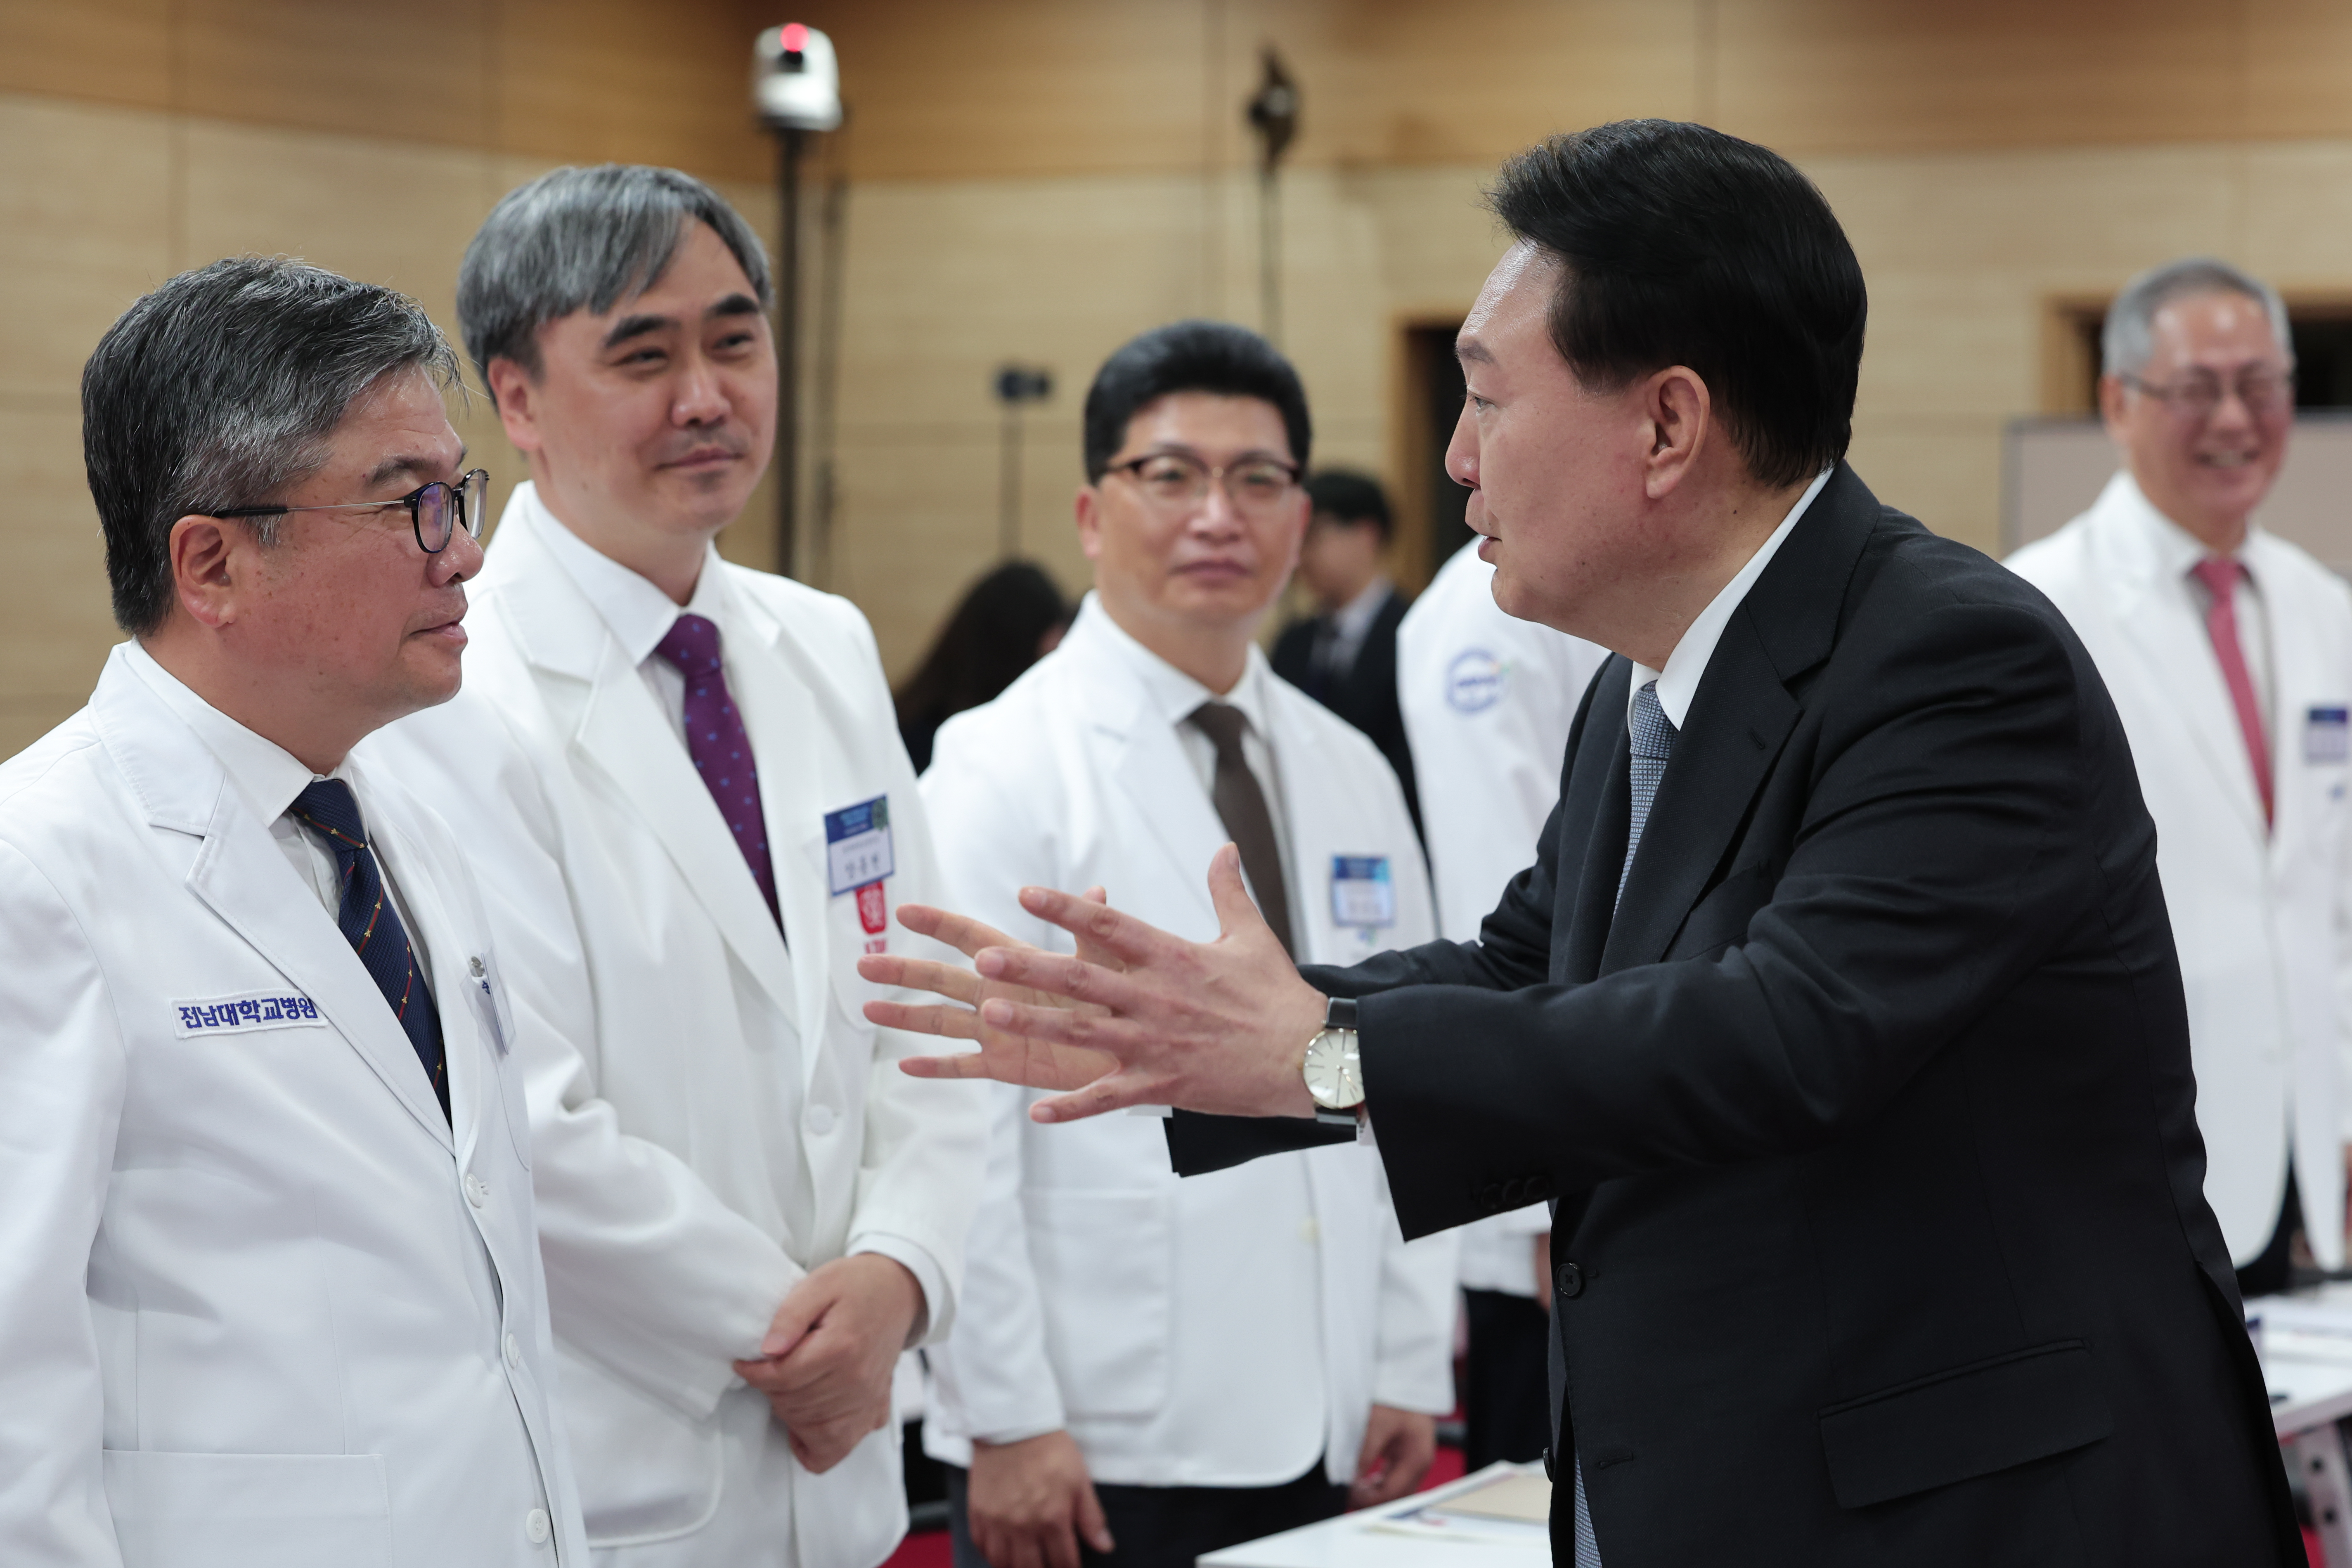 윤석열 대통령이 19일 충북 청주 충북대학교에서 열린 필수의료혁신 전략회의에서 국립대병원장들과 대화하고 있다.